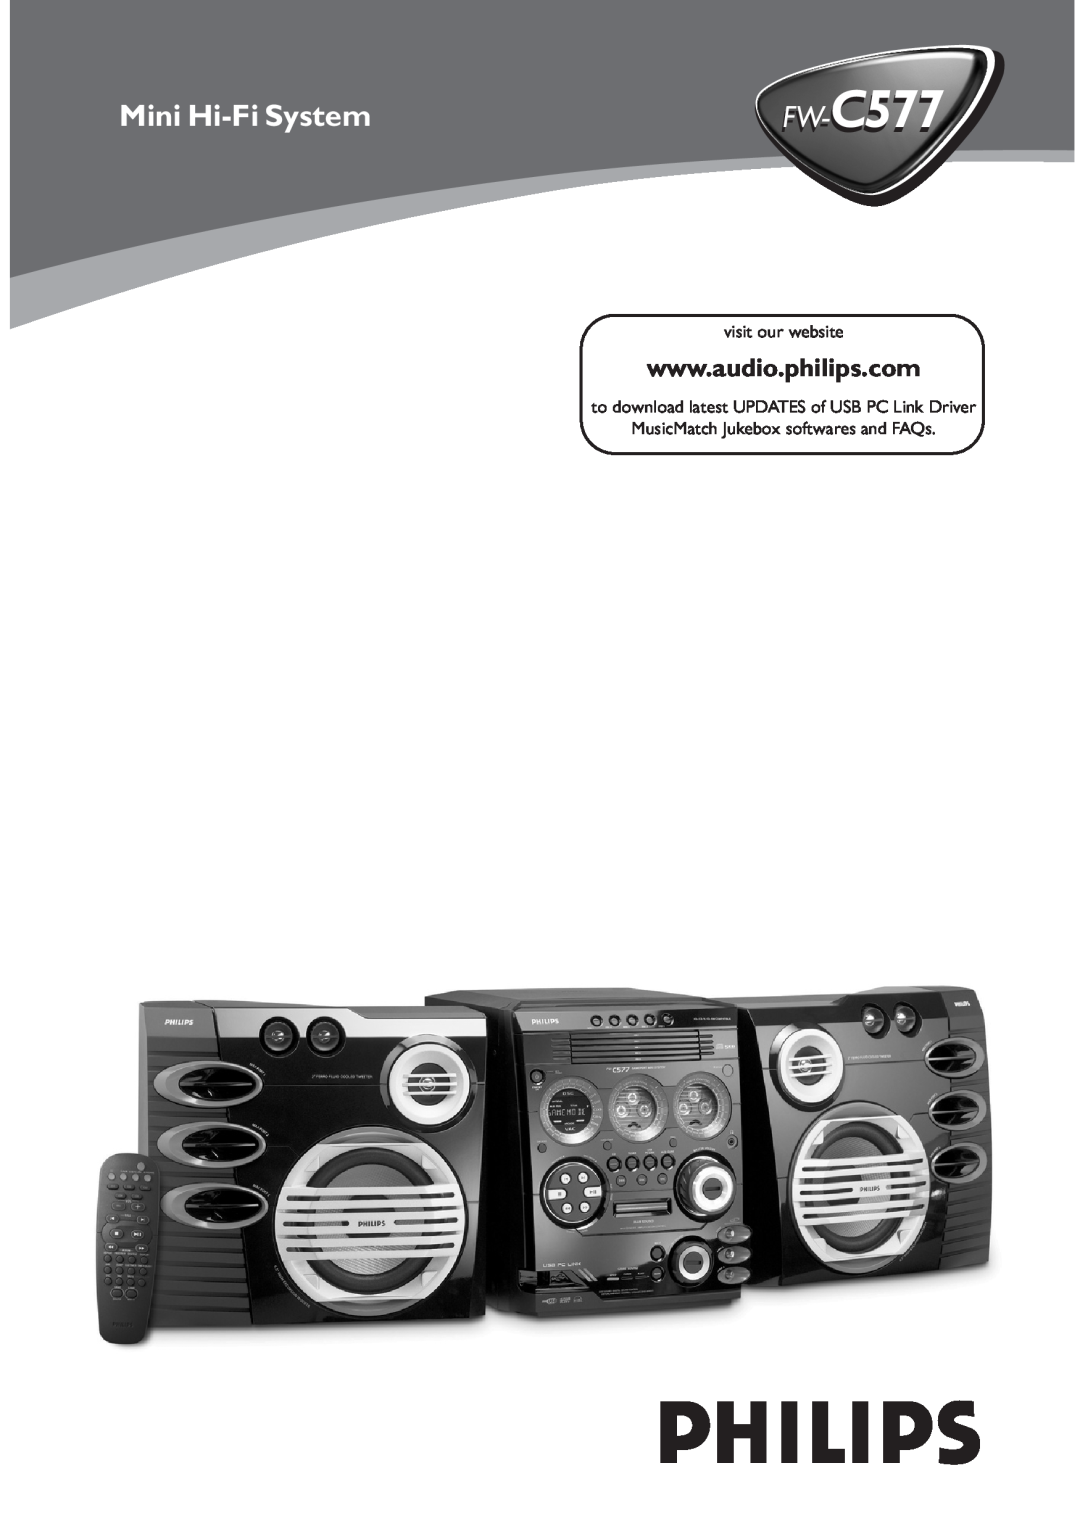 Philips FW-C577 manual FW--C577, Mini Hi-FiSystem 